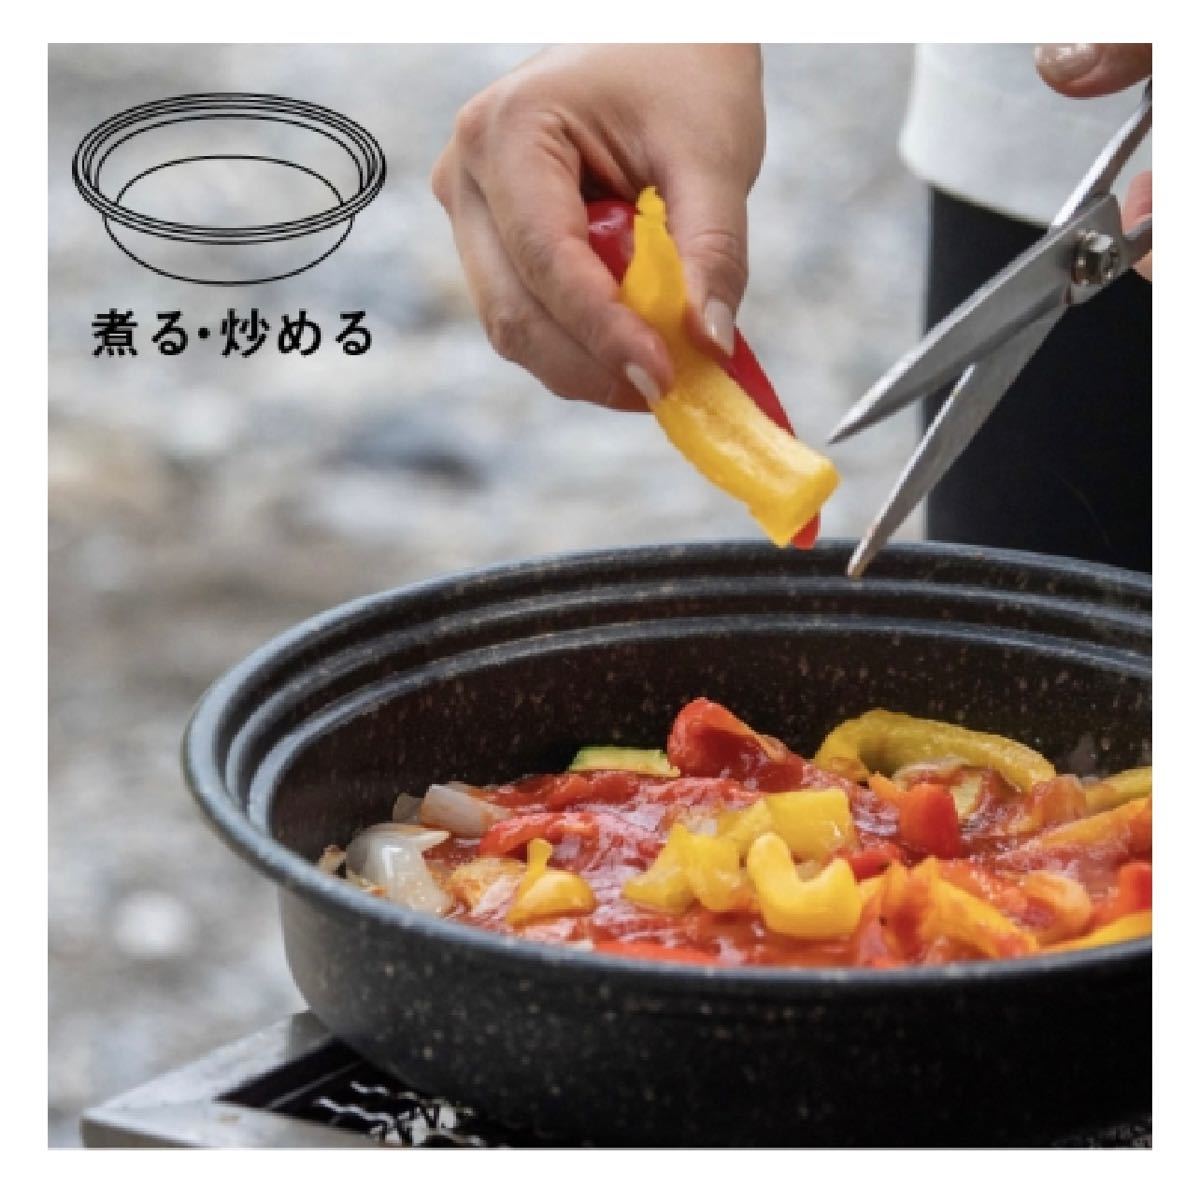 GRISTA＋ アウトドア料理 一台で煮る、焼く、蒸すが可能